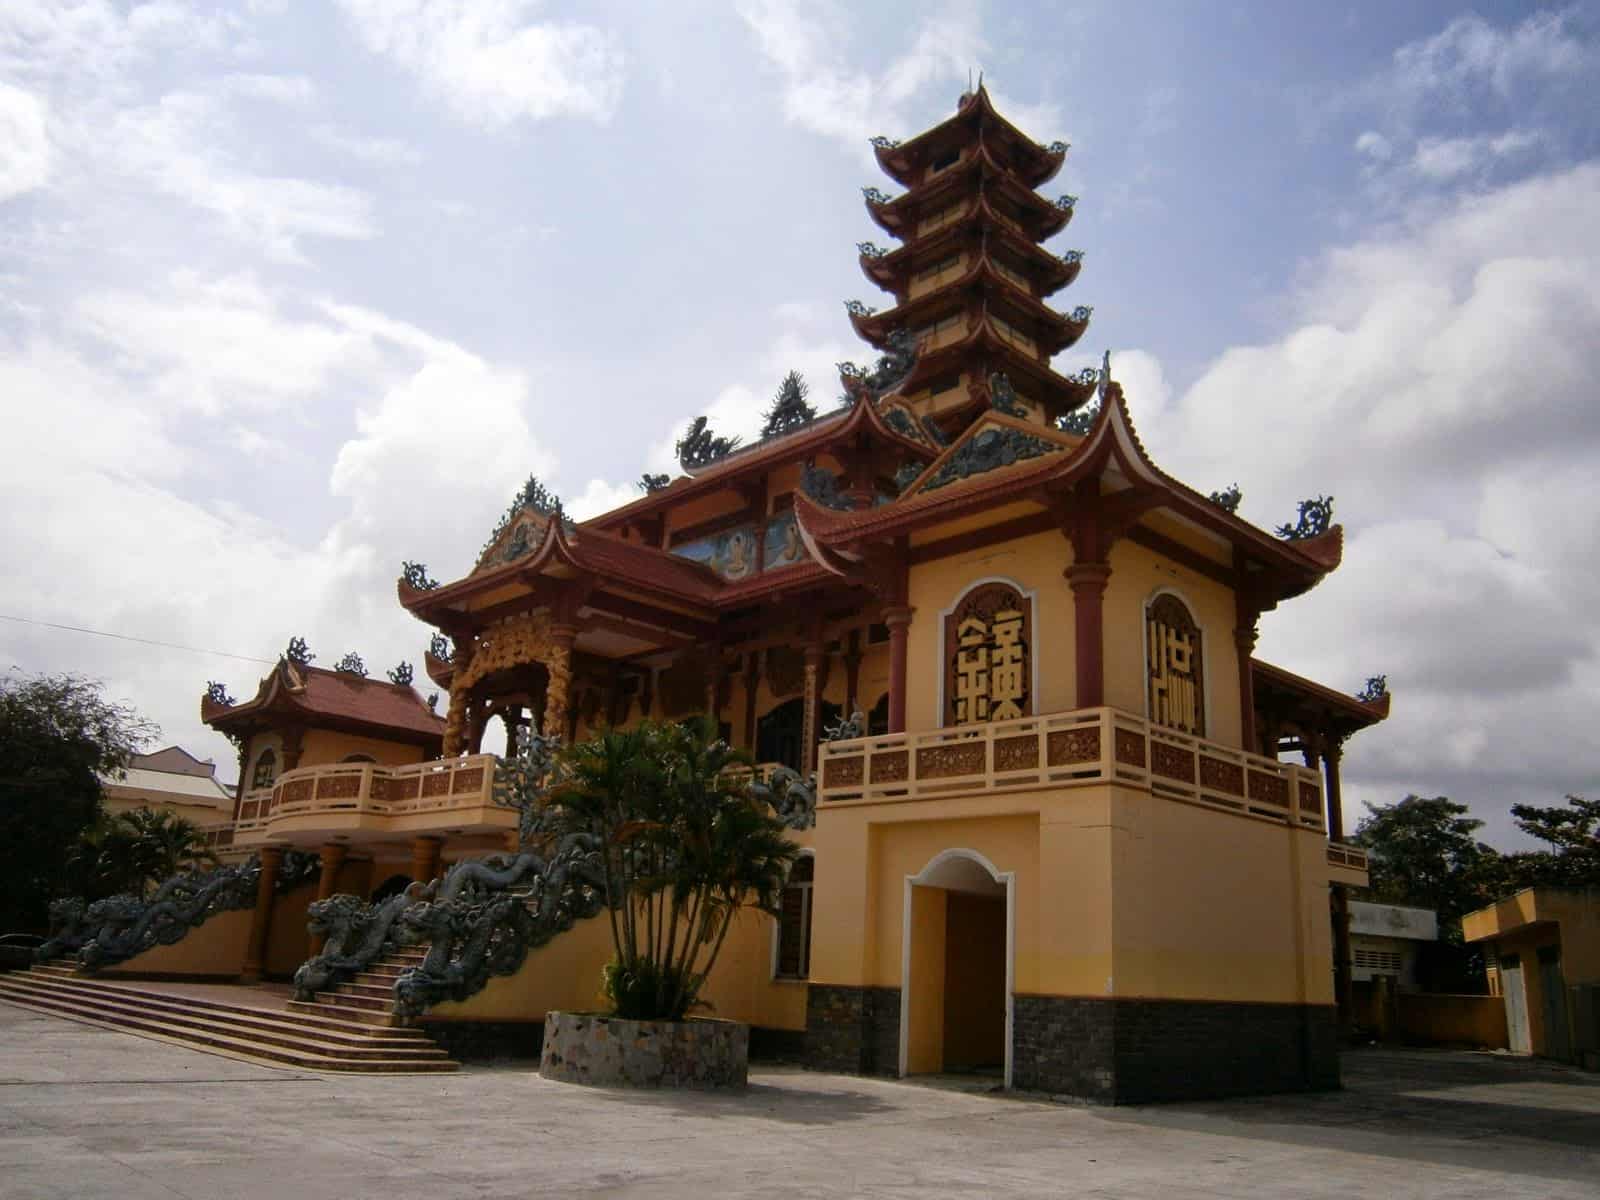 Đến thăm đàn “quỷ nhỏ” đáng yêu ở ngôi chùa khỉ Bà Rịa - Vũng Tàu